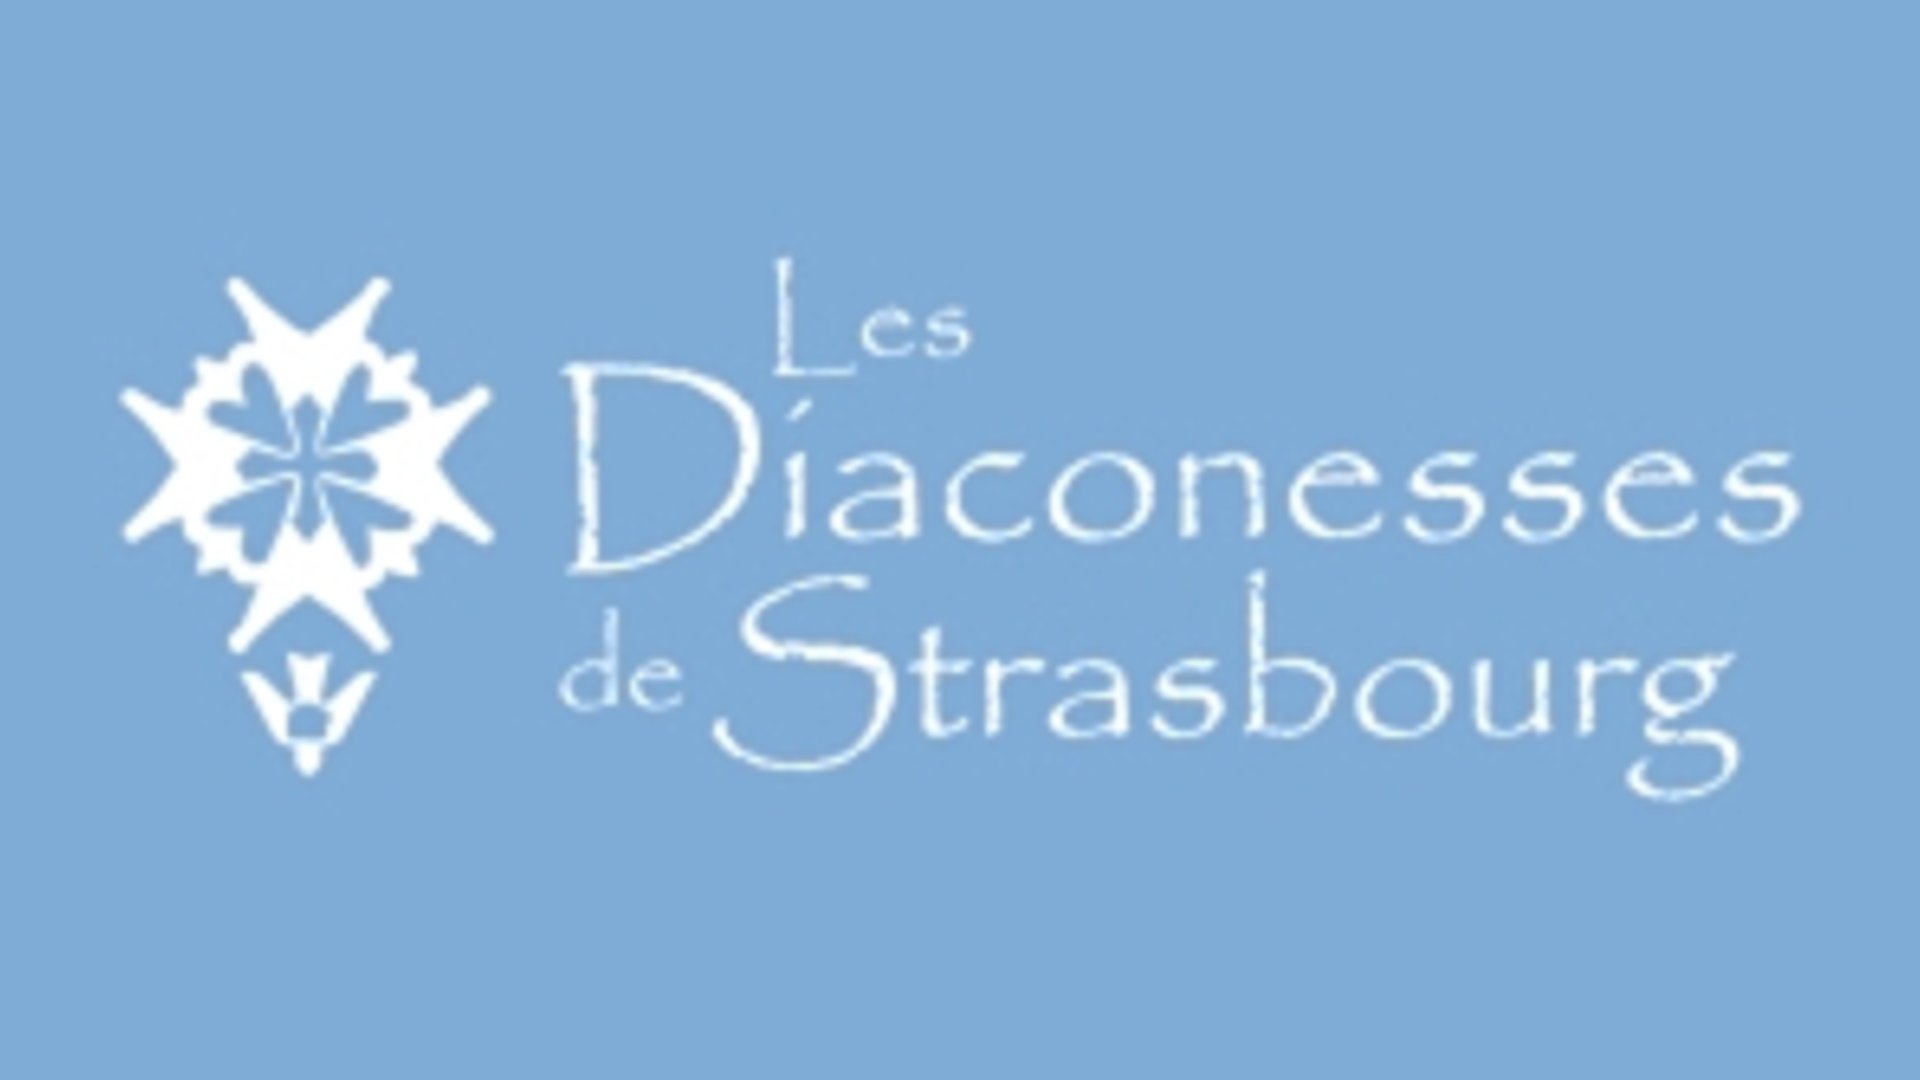 Les Cliniques Adassa et Diaconat de Strasbourg se regroupent